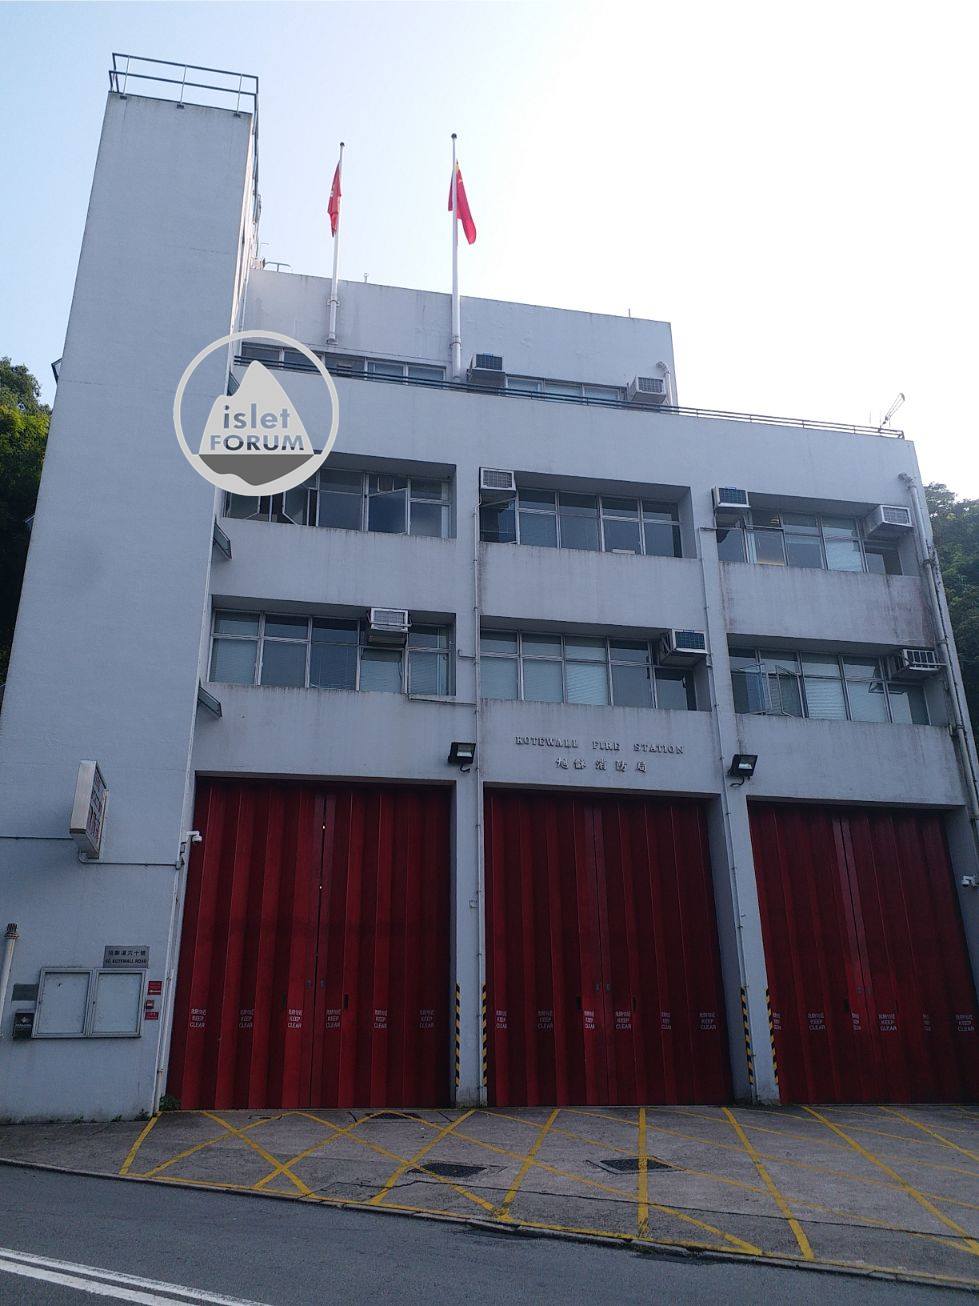 旭龢道消防局 Kotewall Fire Station6 (3).jpg